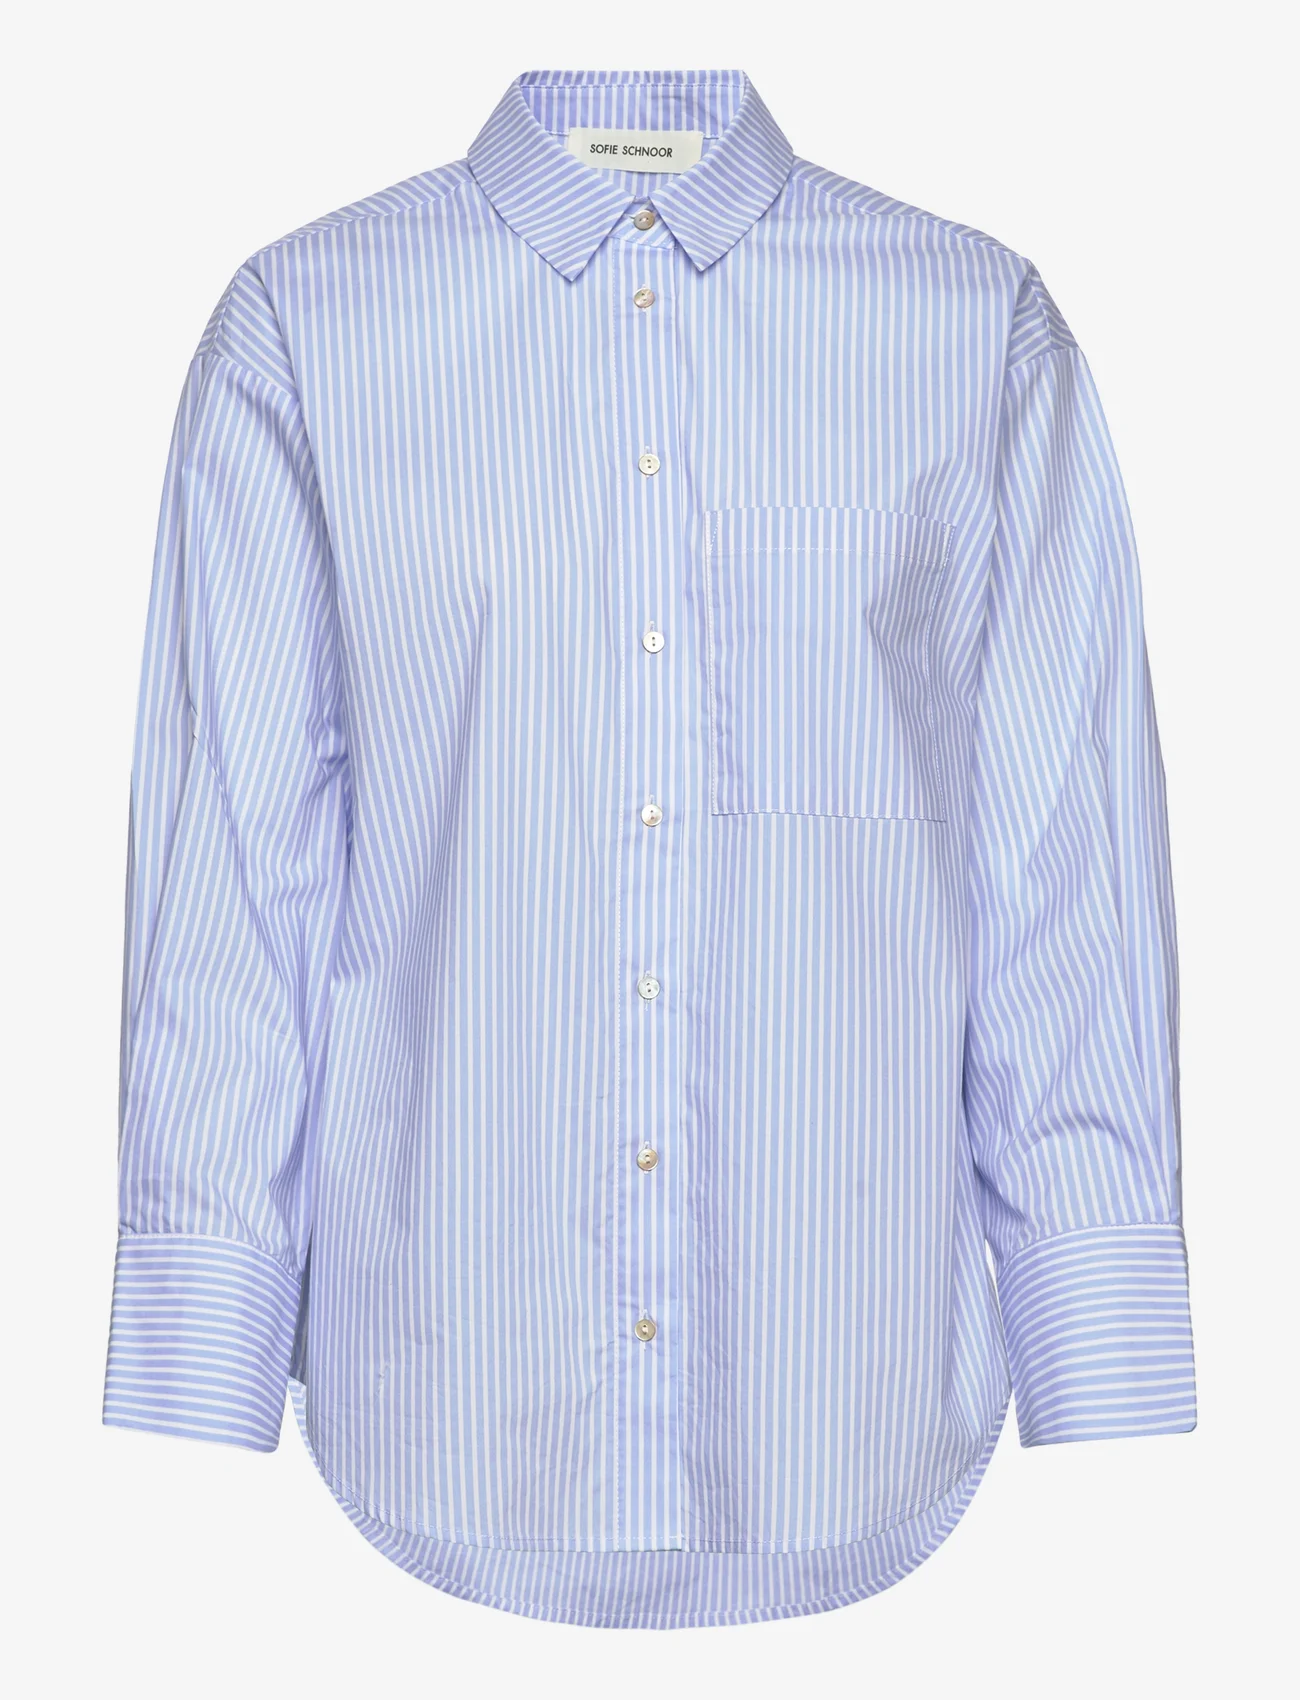 Sofie Schnoor - Shirt - långärmade skjortor - light blue striped - 0